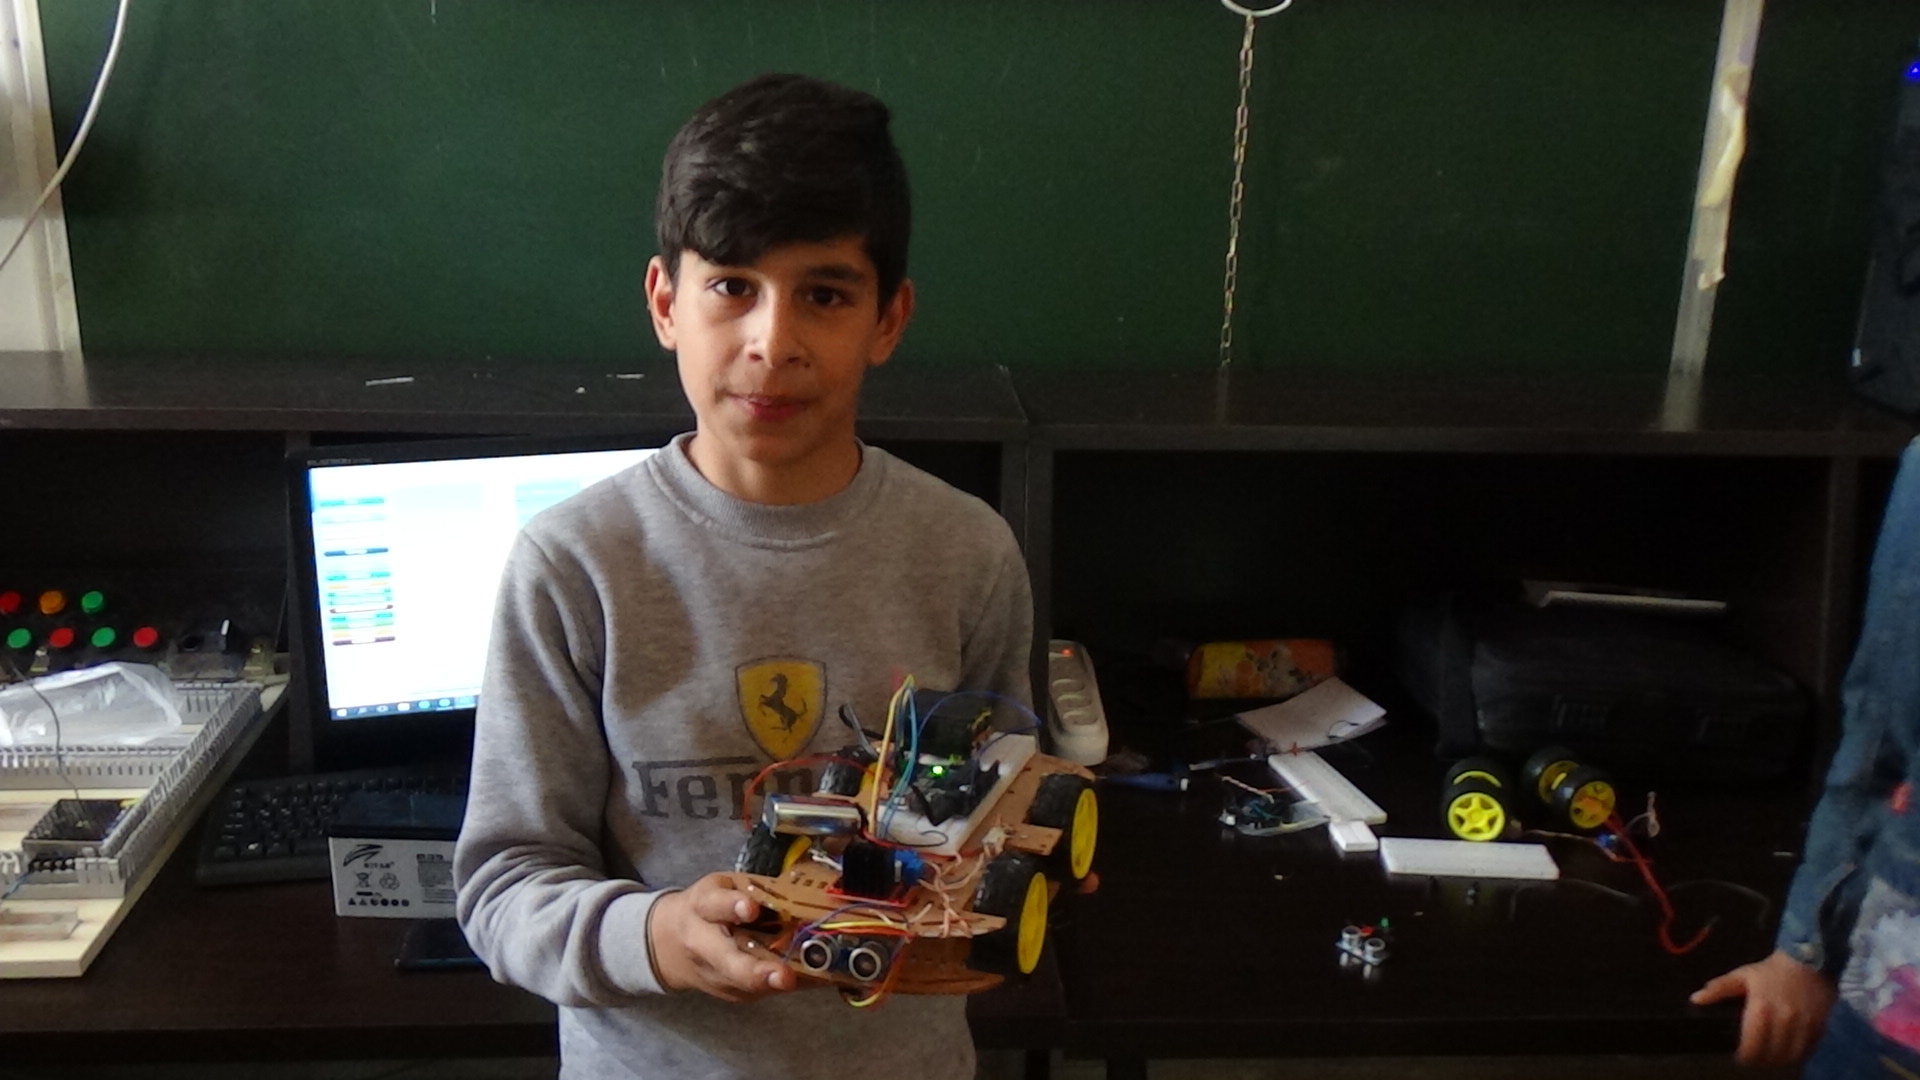 الطفل محمد ظفار صاحب ال "13 اختراعا" في مجال الطاقة